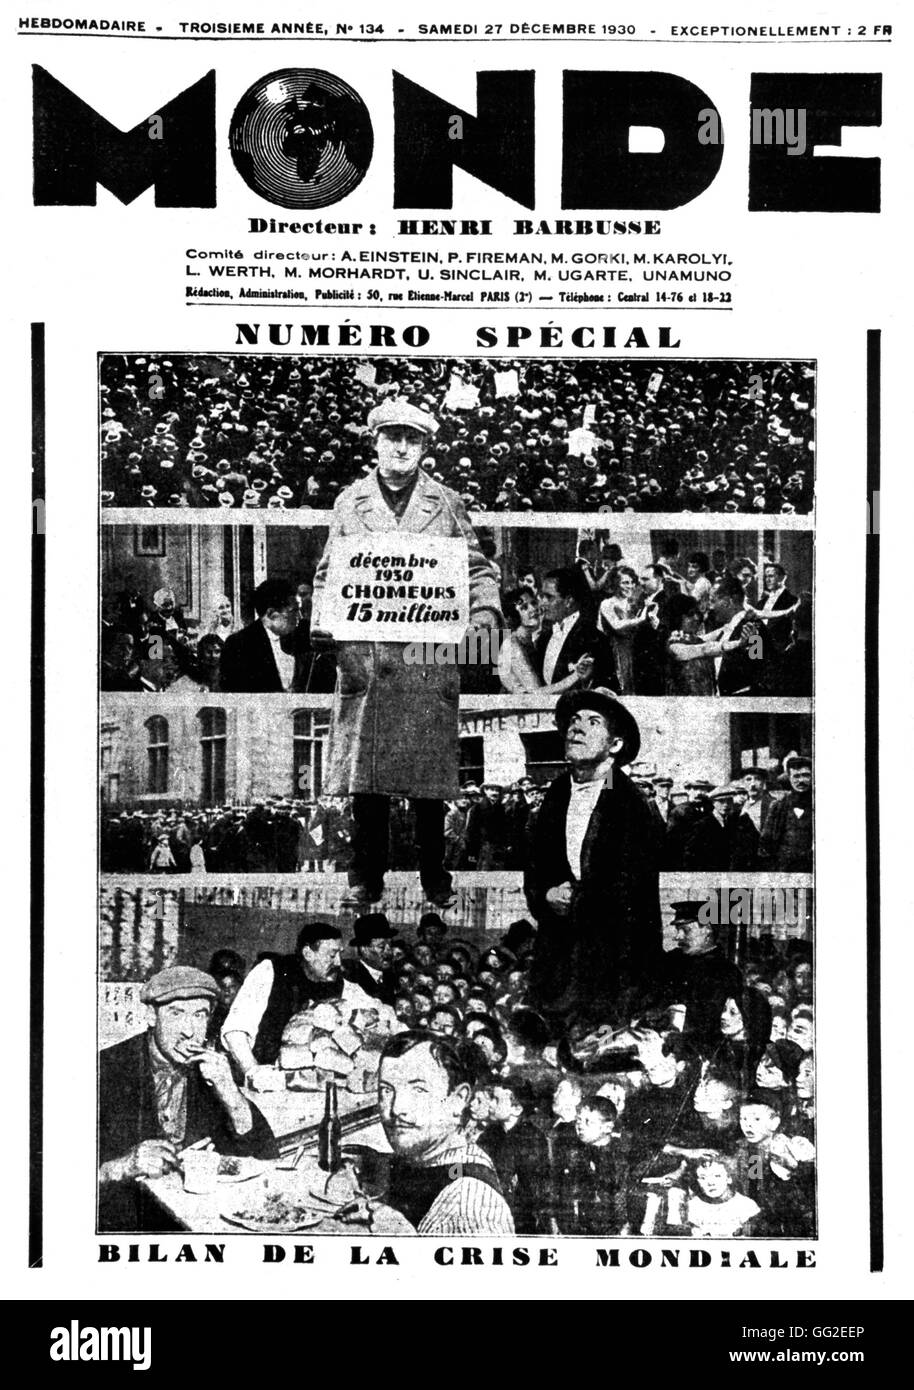 Edición especial del periódico "onde" de fecha 12-27-1930: como resultado de la crisis mundial Francia 1930 Foto de stock